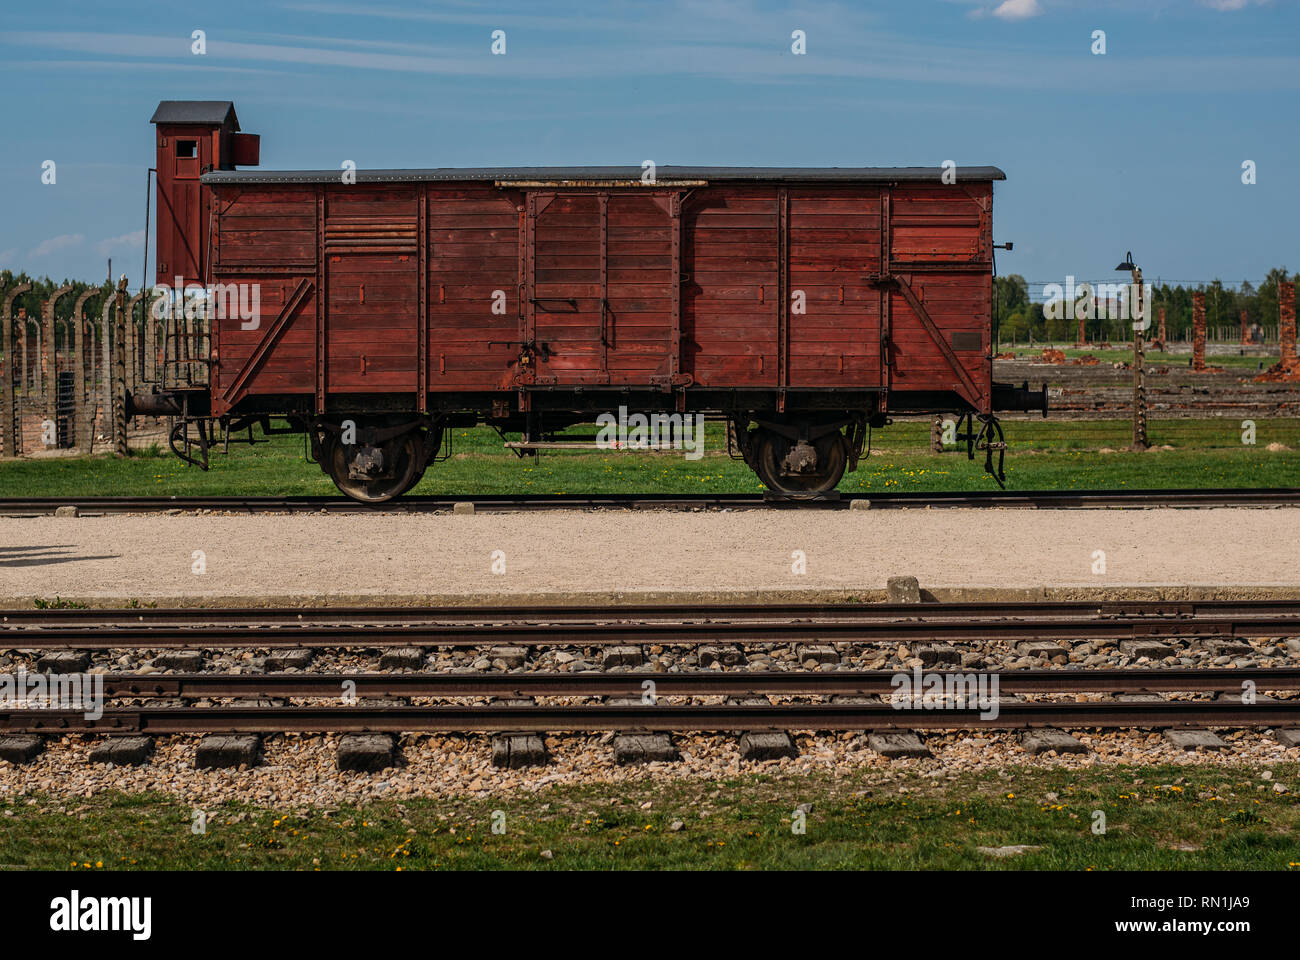 Wagon inside Auschwitz - Birkenau concentration camp near Krakow, Poland Stock Photo